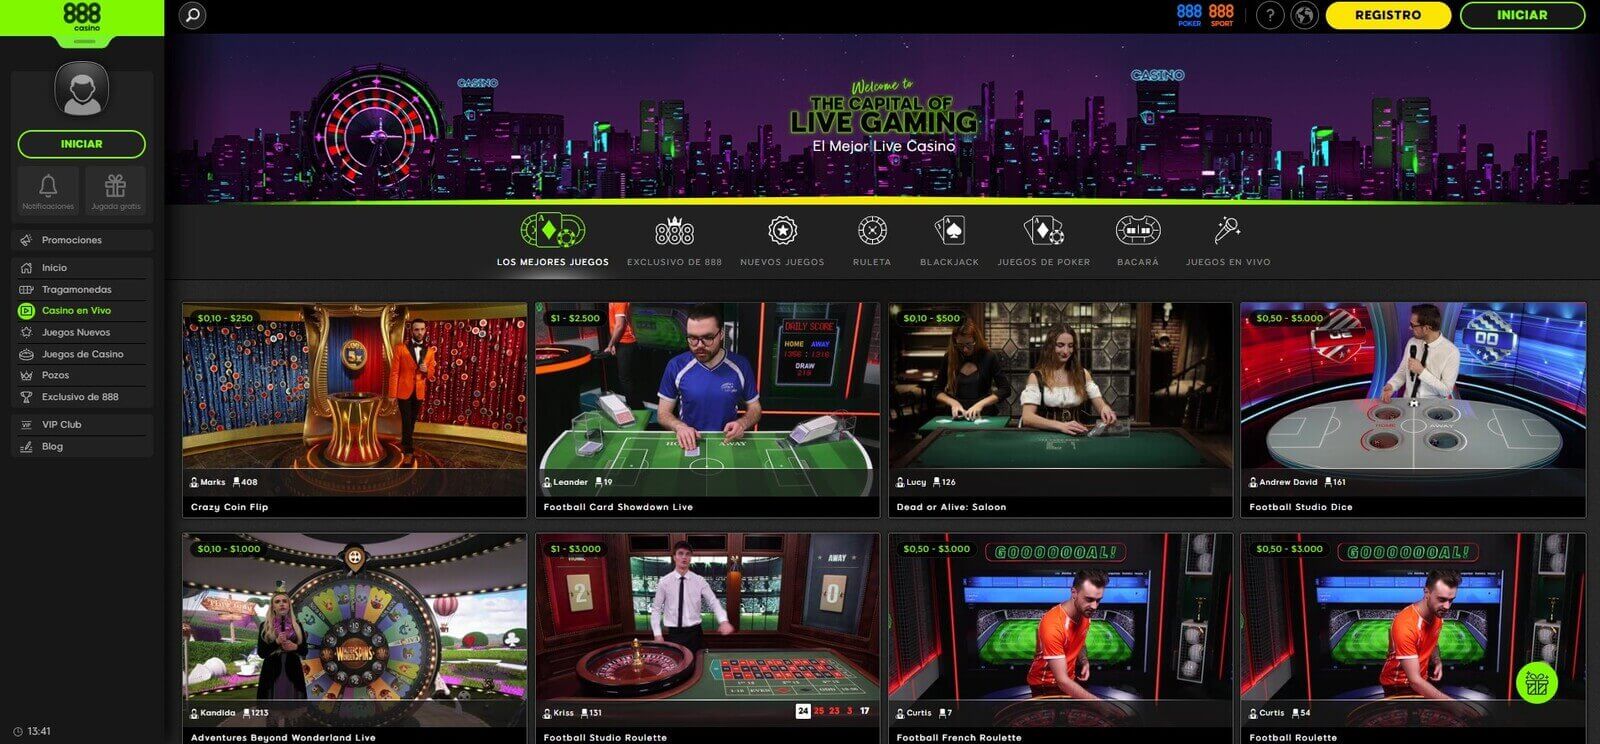 Juegos en directo del casino online 888 en Latinoamérica